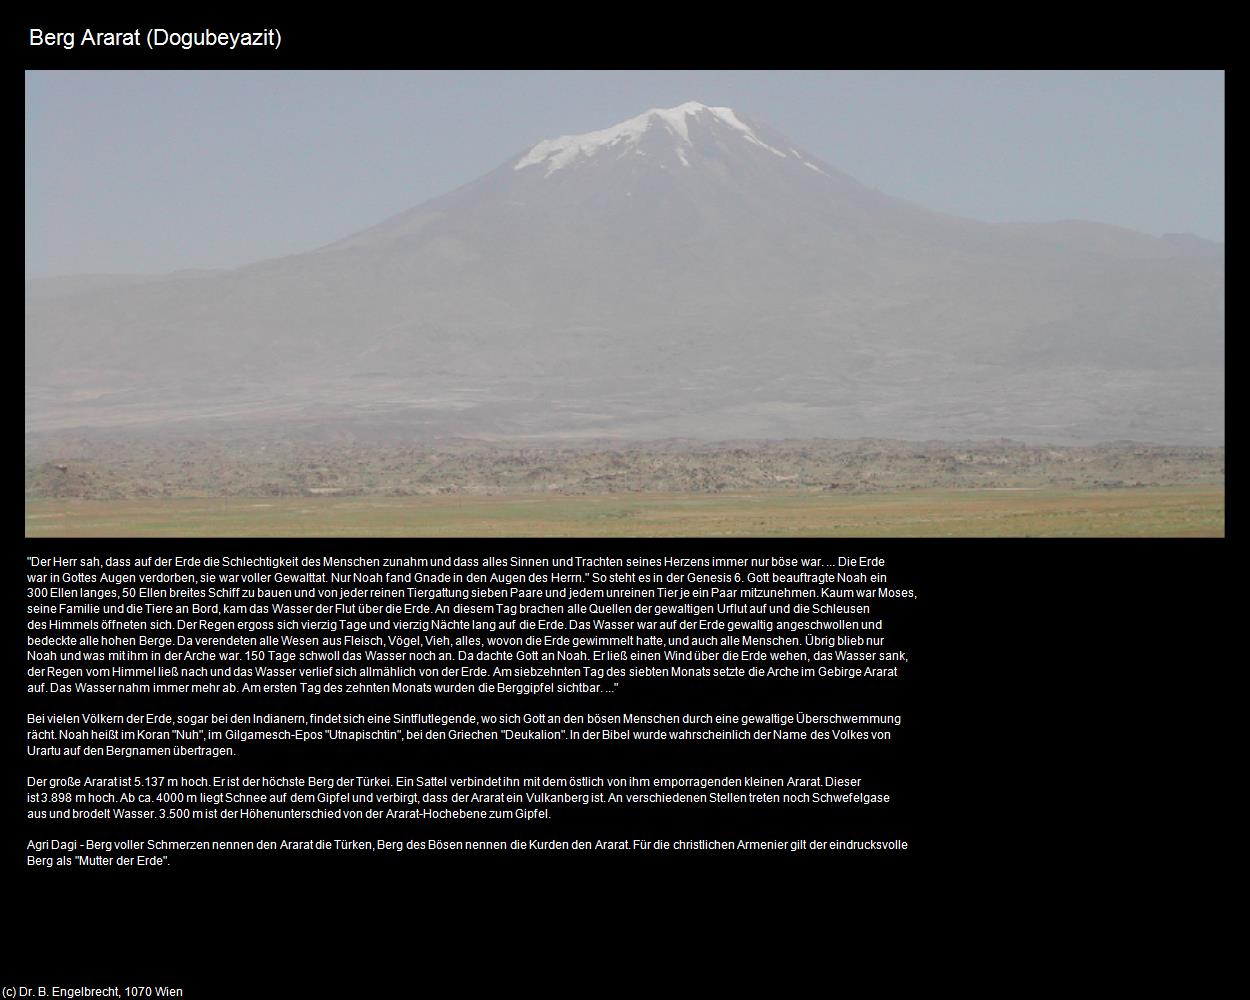 Berg Ararat (Dogubeyazit) in TÜRKEI